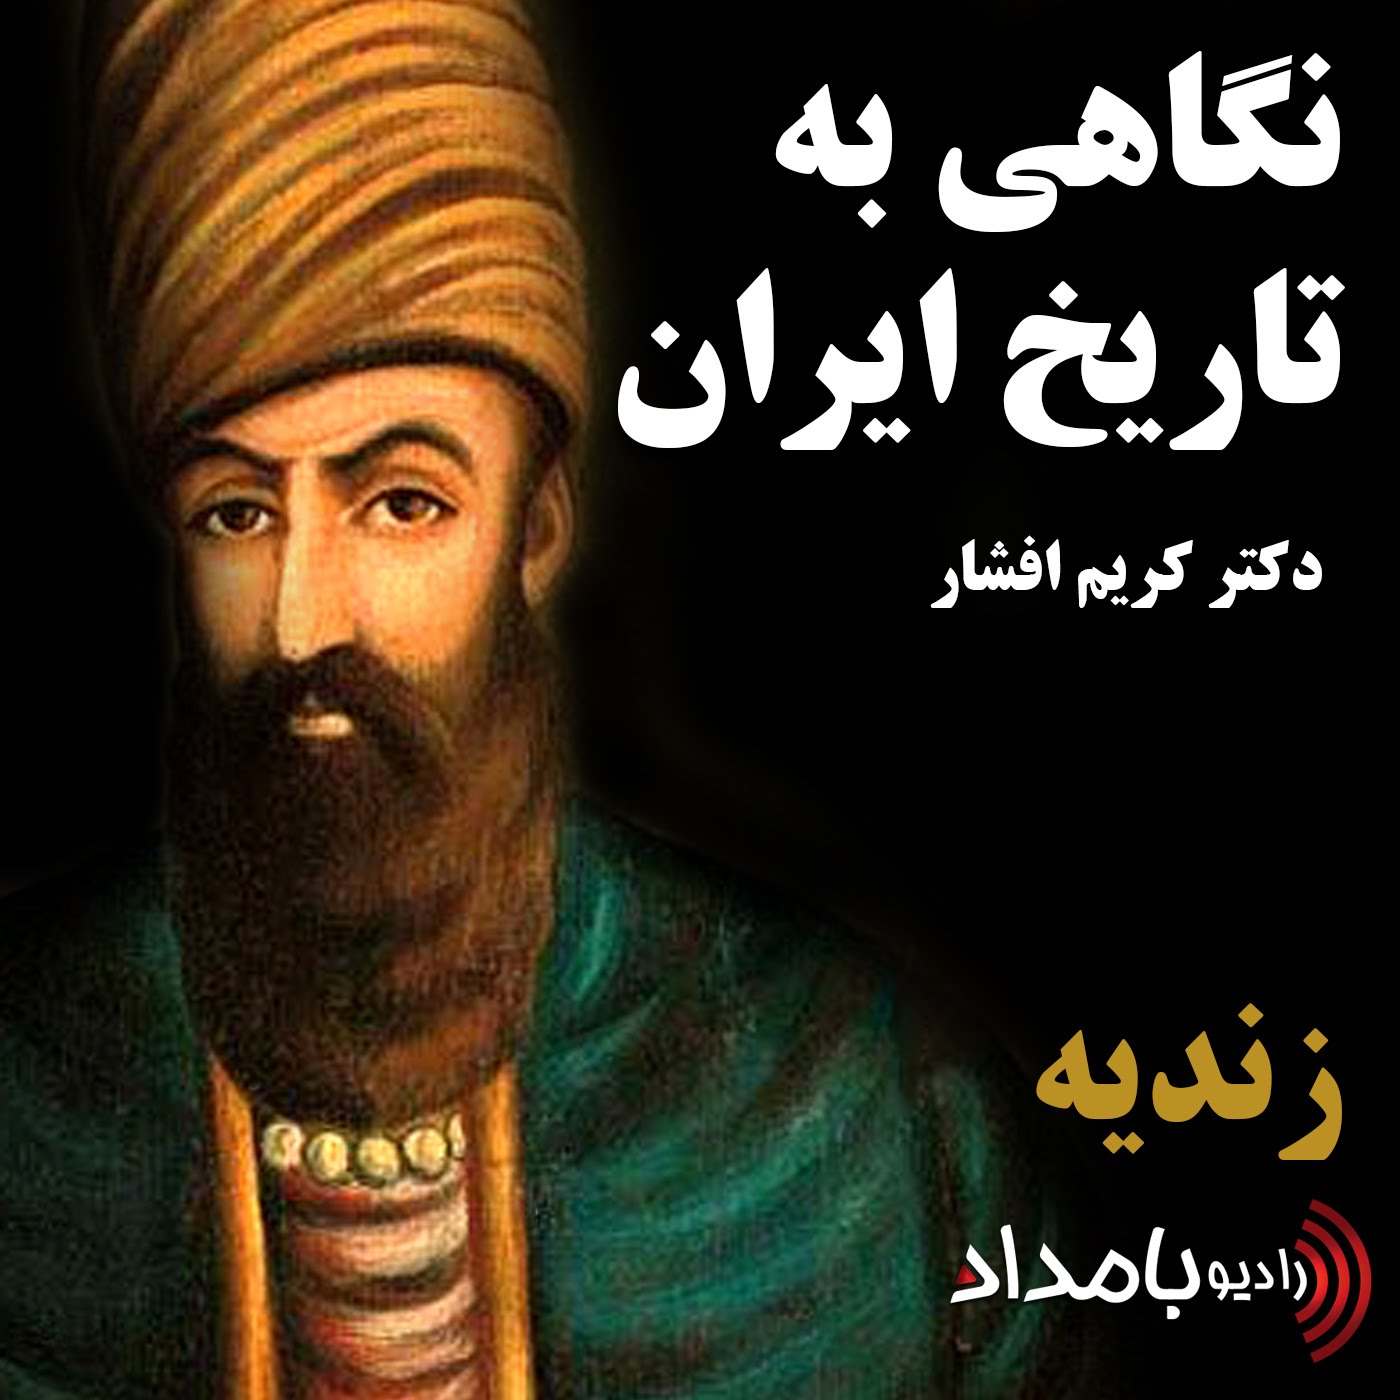 زندیه - بخش دوم، ظهور کریمخان زند و غارت اصفهان توسط علیمردان خان بختیاری